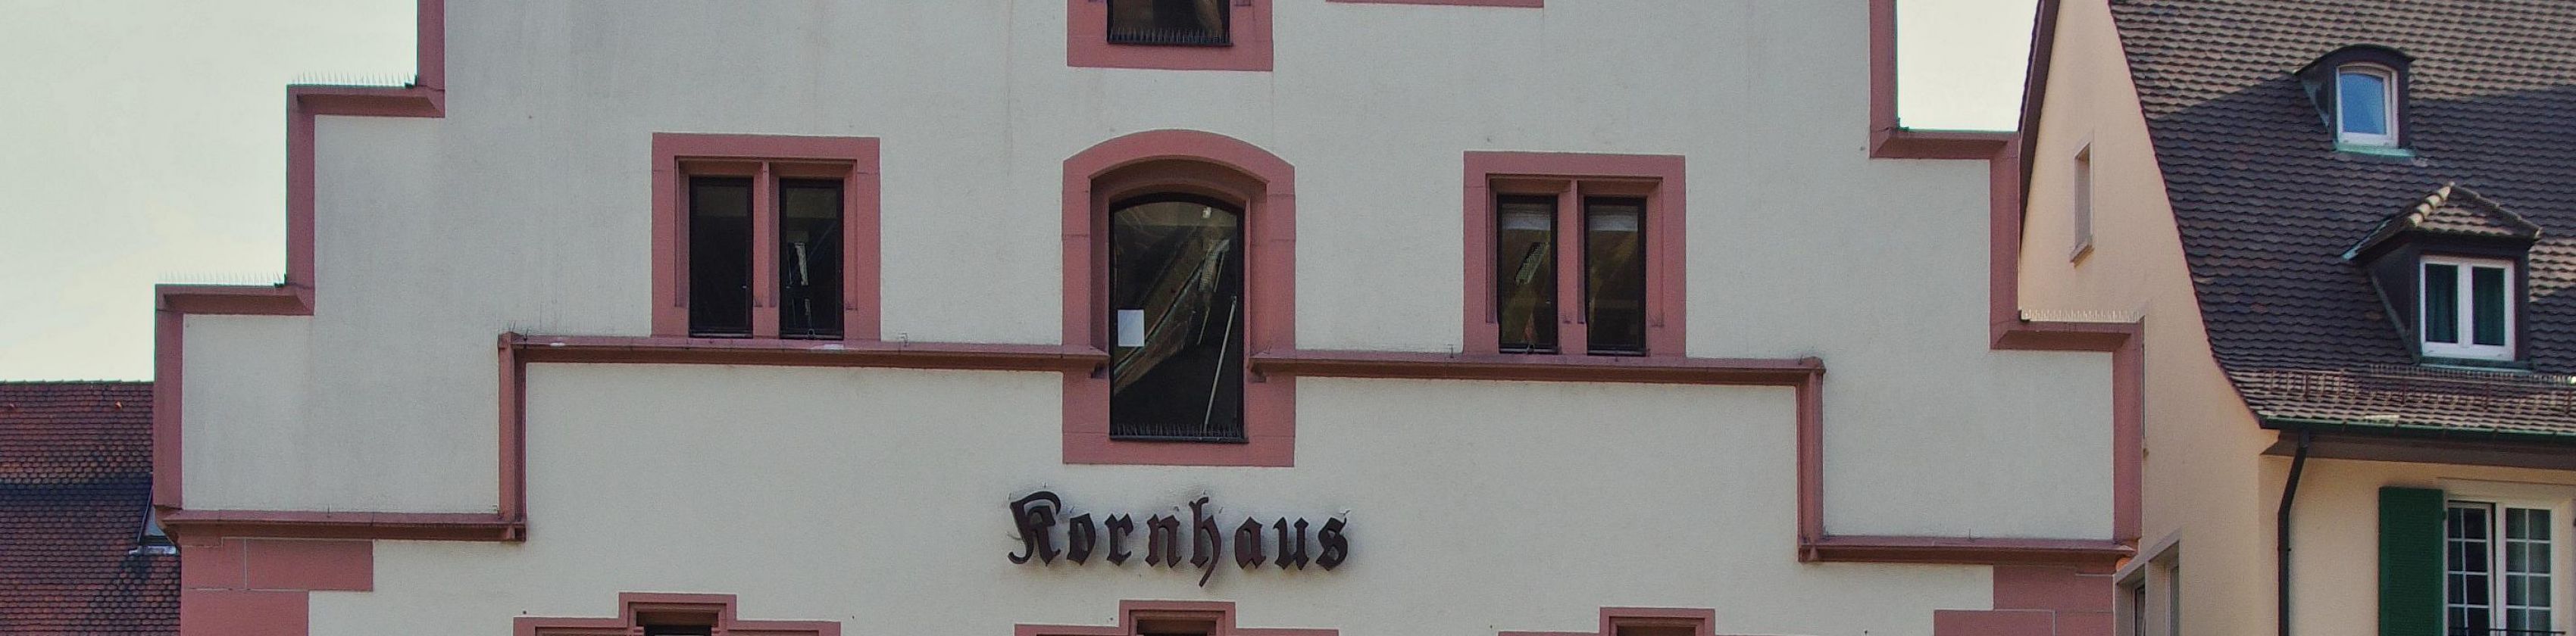 Kornhaus_(Freiburg)_4079